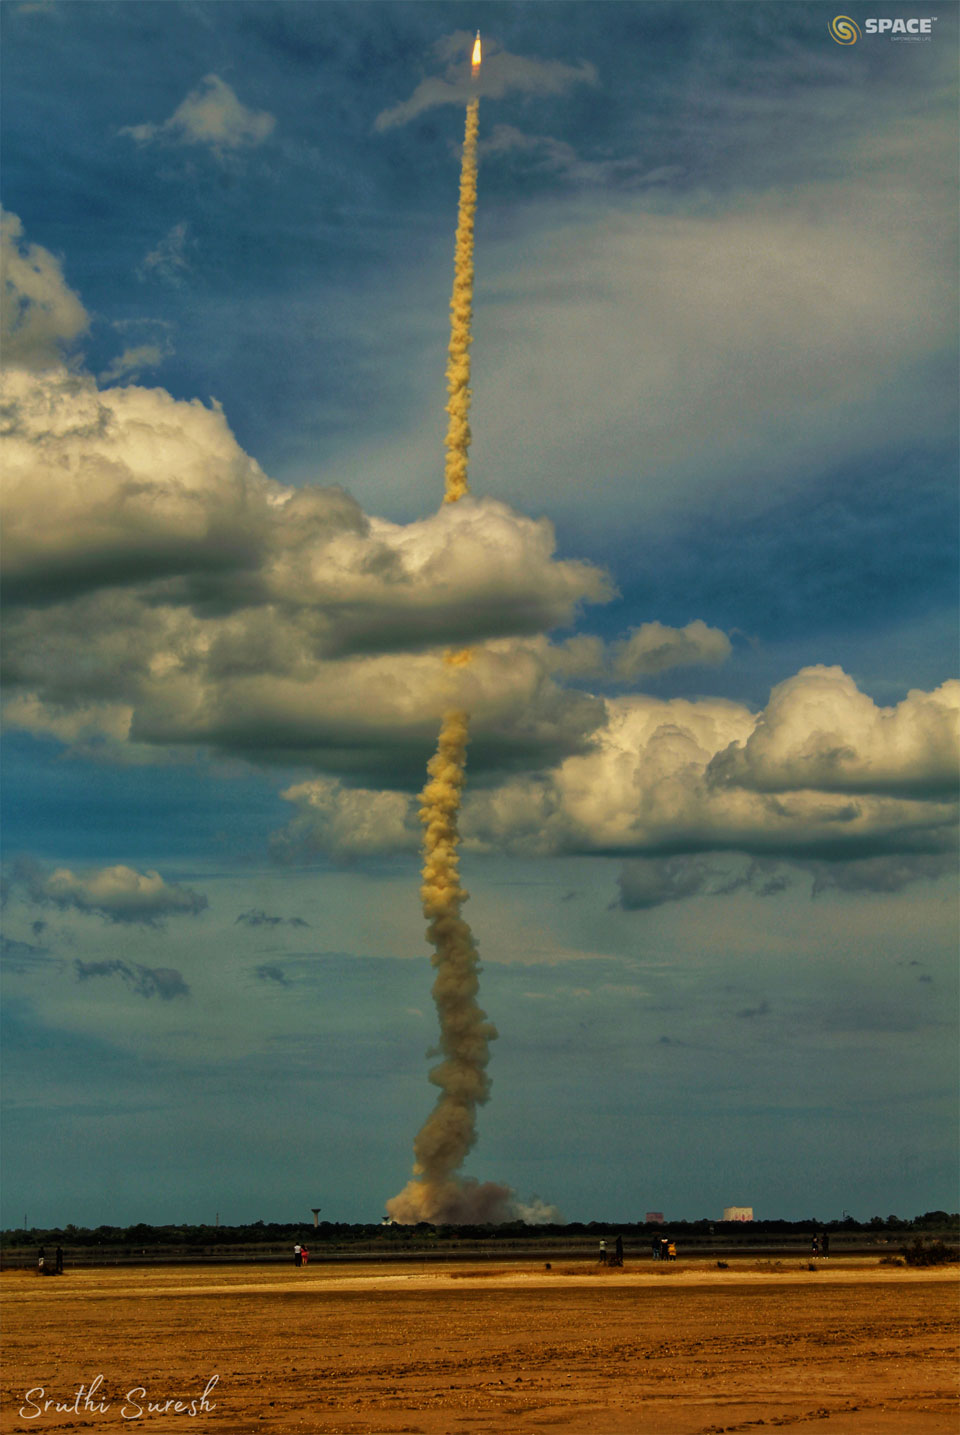 火箭升空后冒出长长的烟羽。火箭在蓝天的映衬下穿过云层。前景是一片空旷的棕褐色田野。有关更多详细信息，请参阅说明。